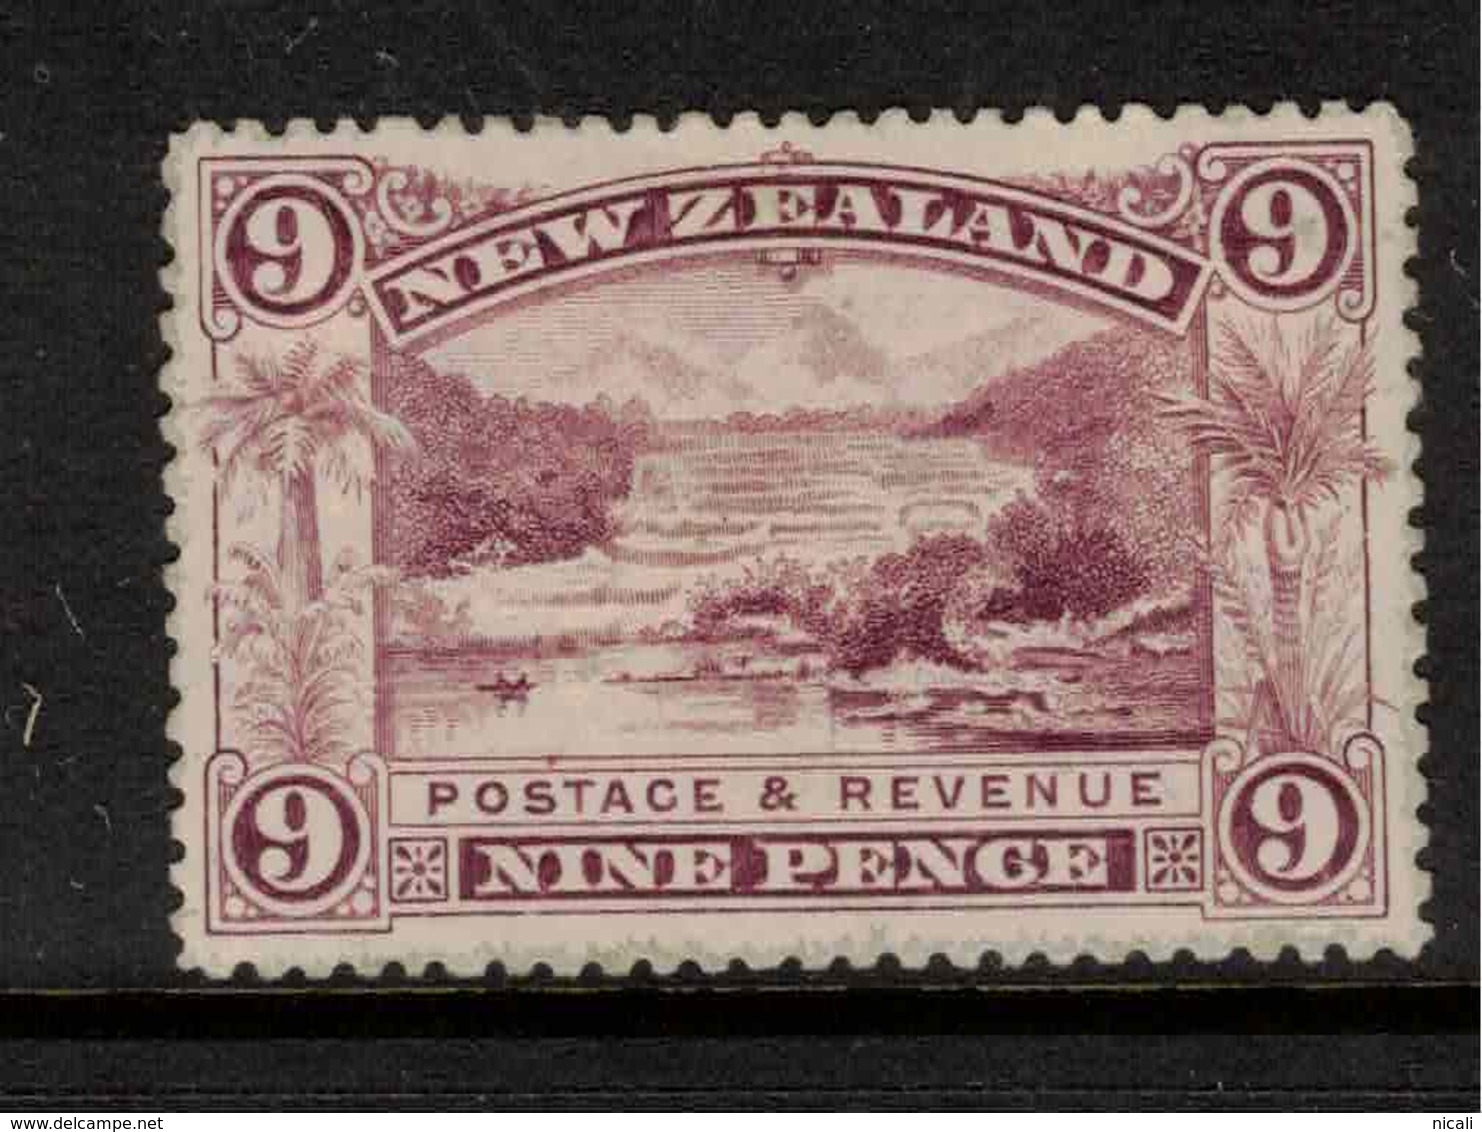 NZ 1898 9d Pink Terraces SG 256 HM ZZ109 - Neufs